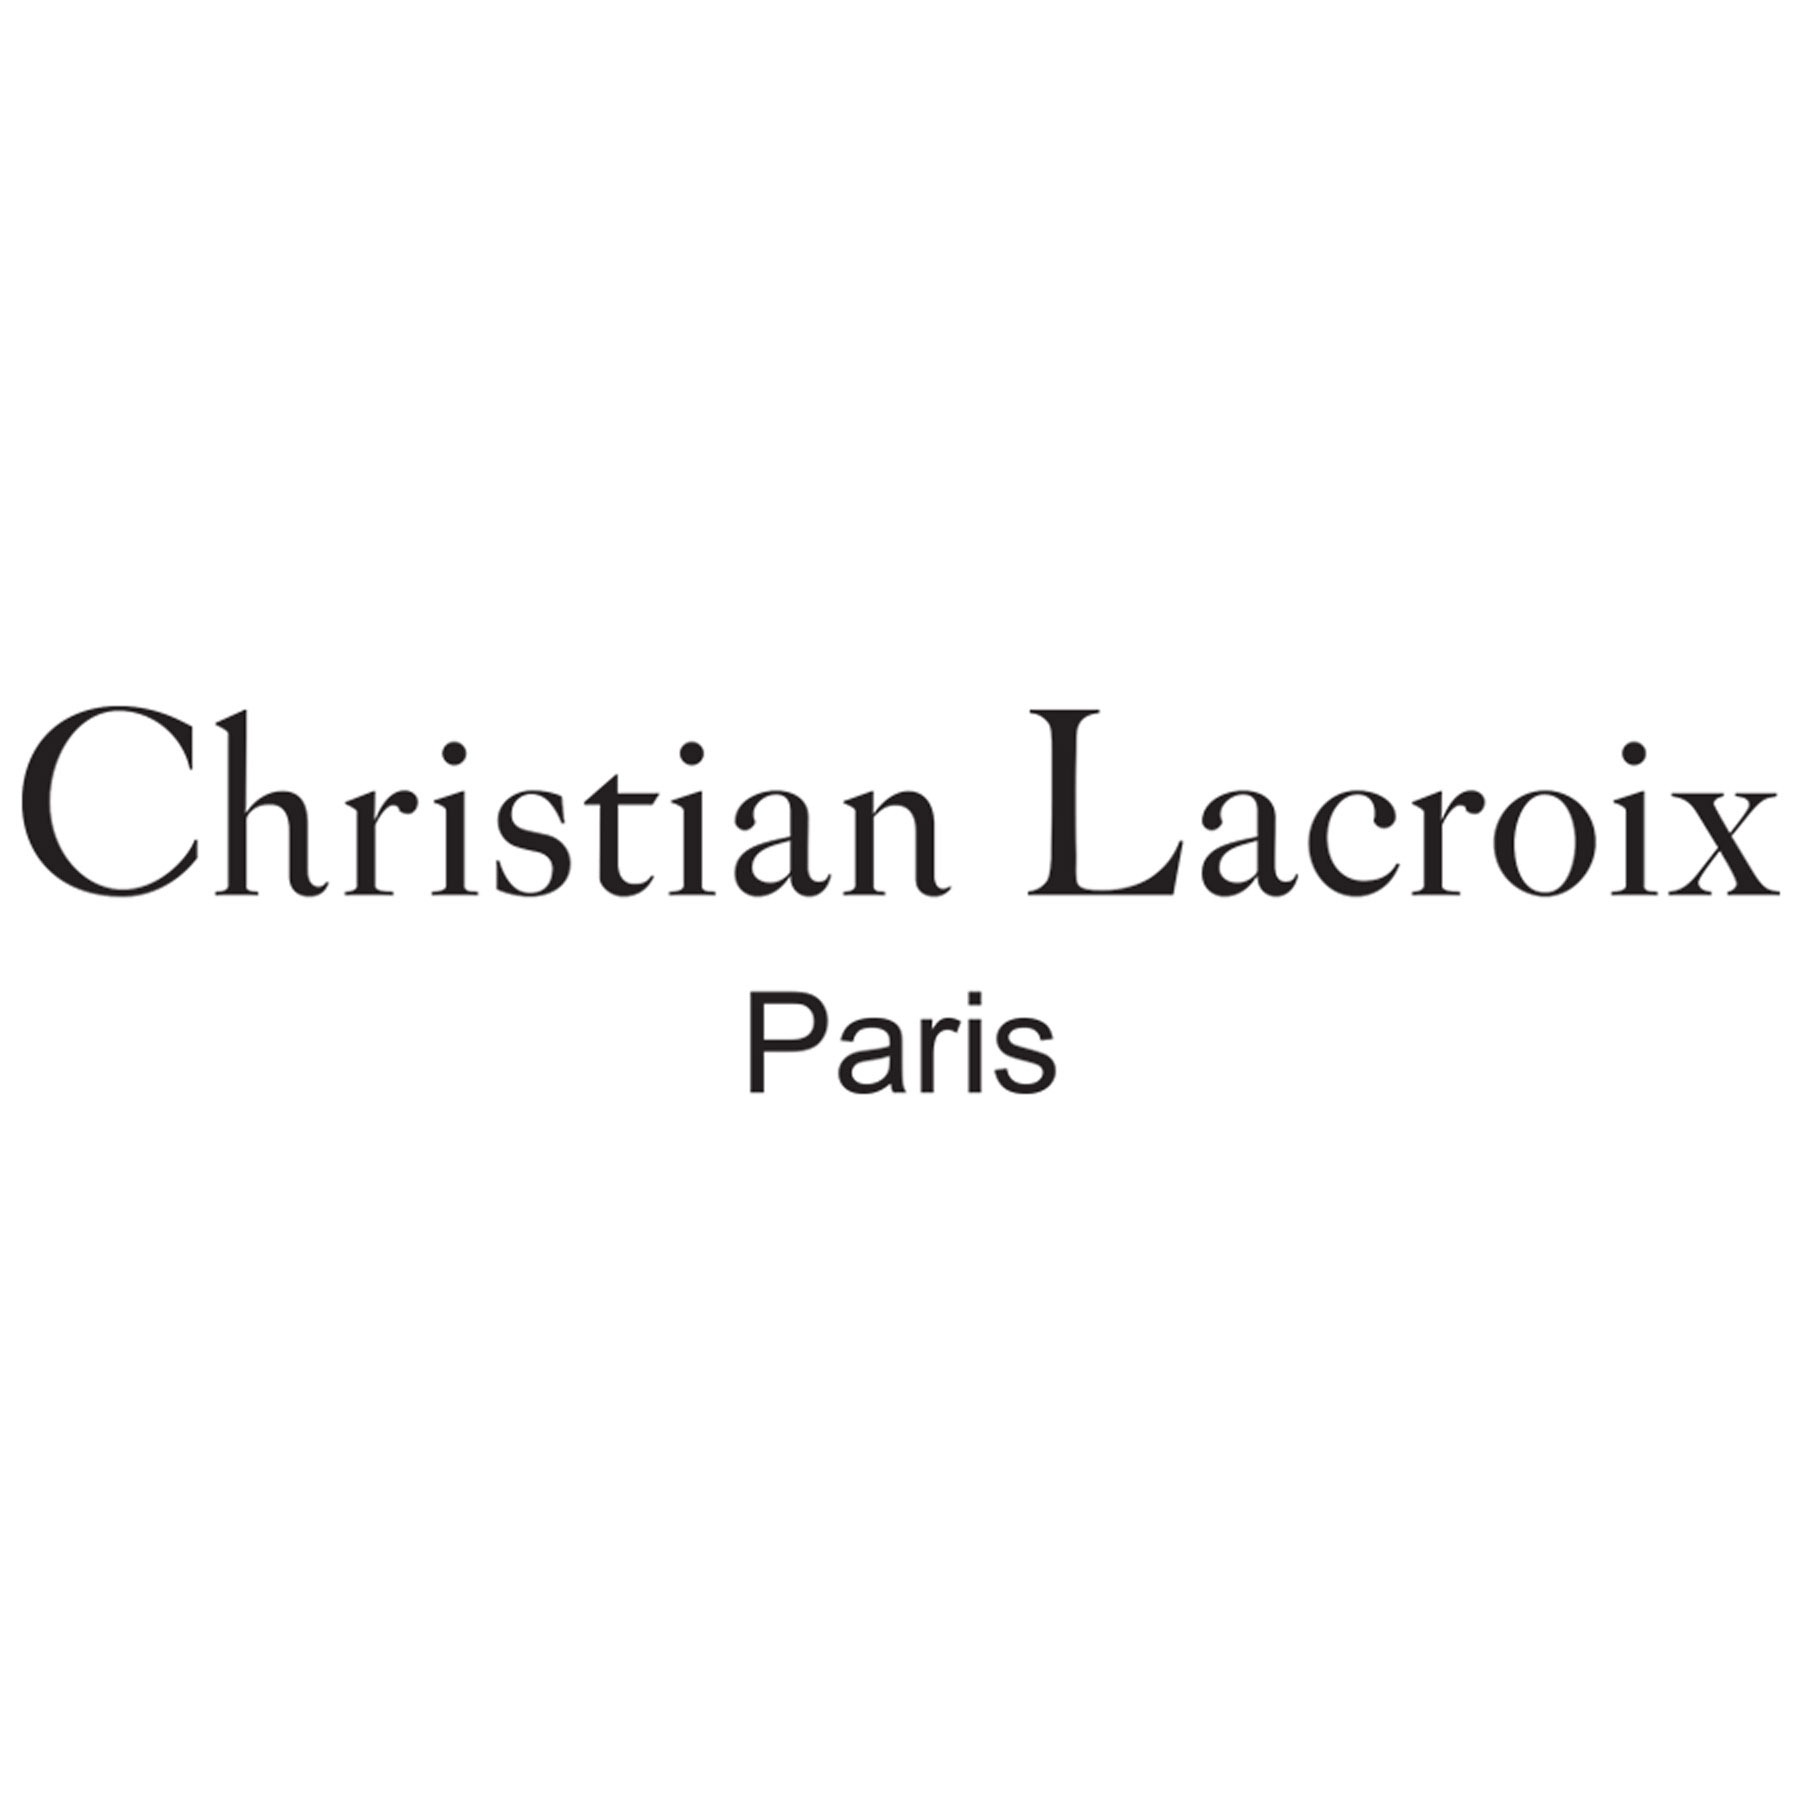 Christian Lacroix - Murals - Christian Lacroix